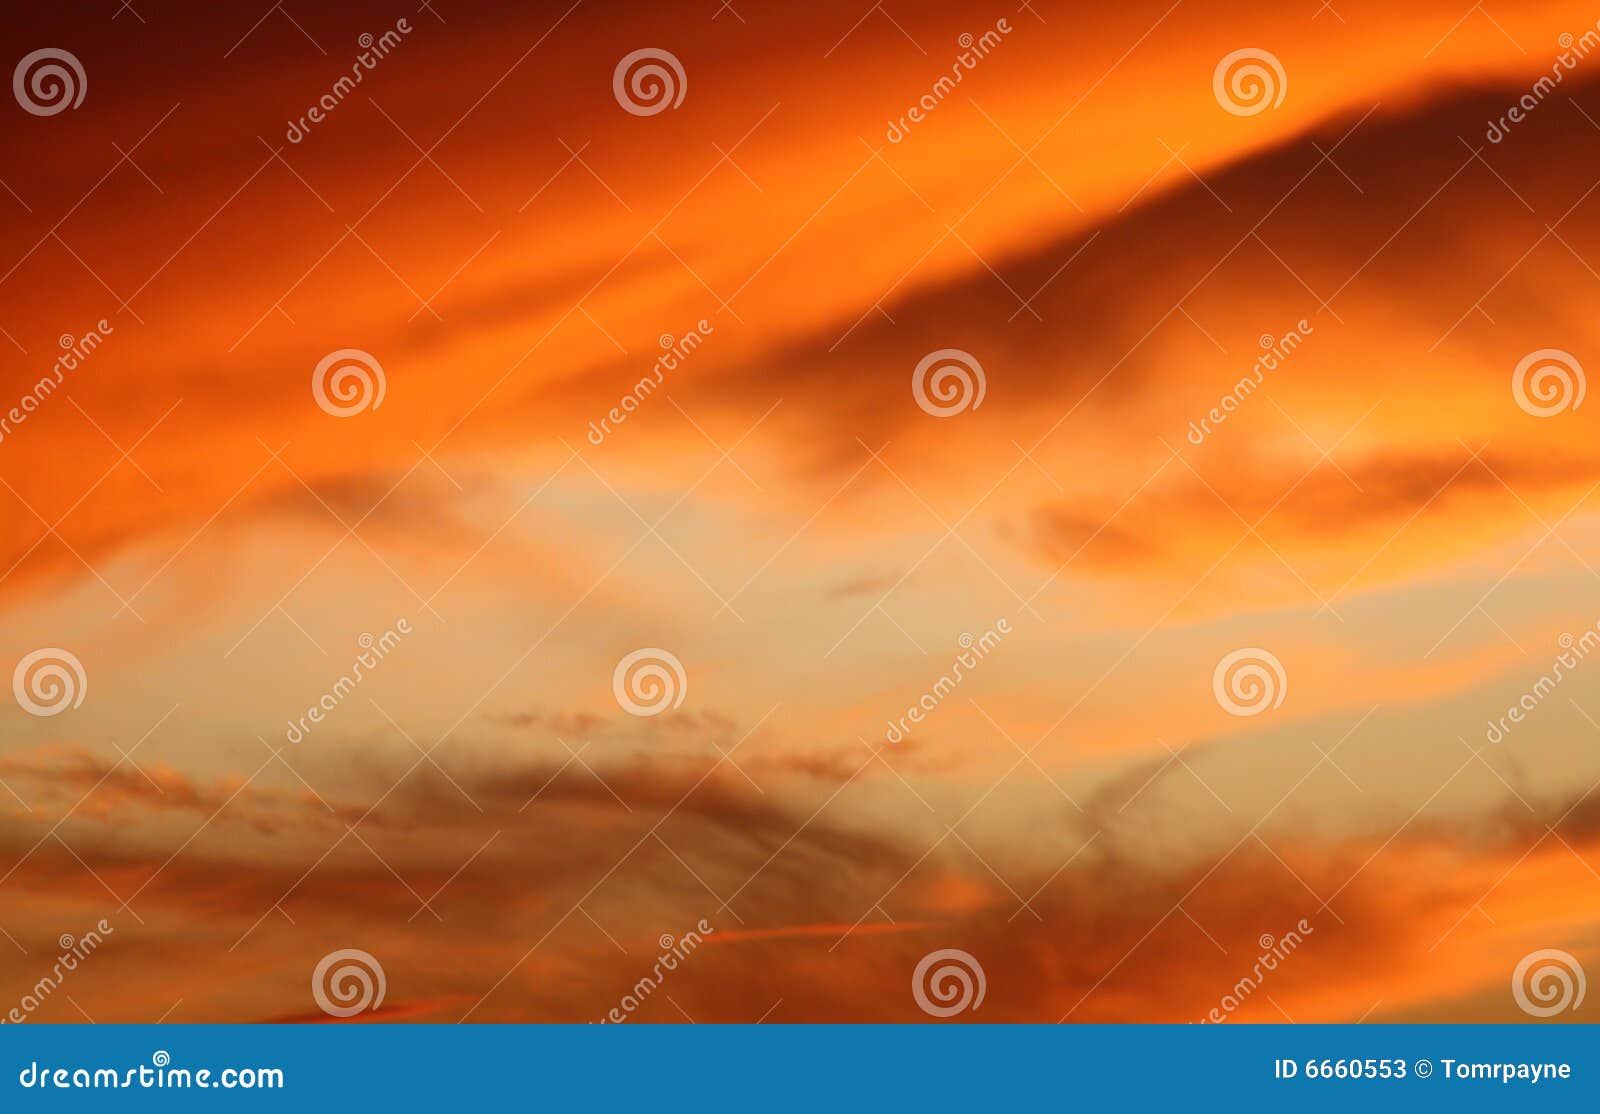 orange and blue evening sky